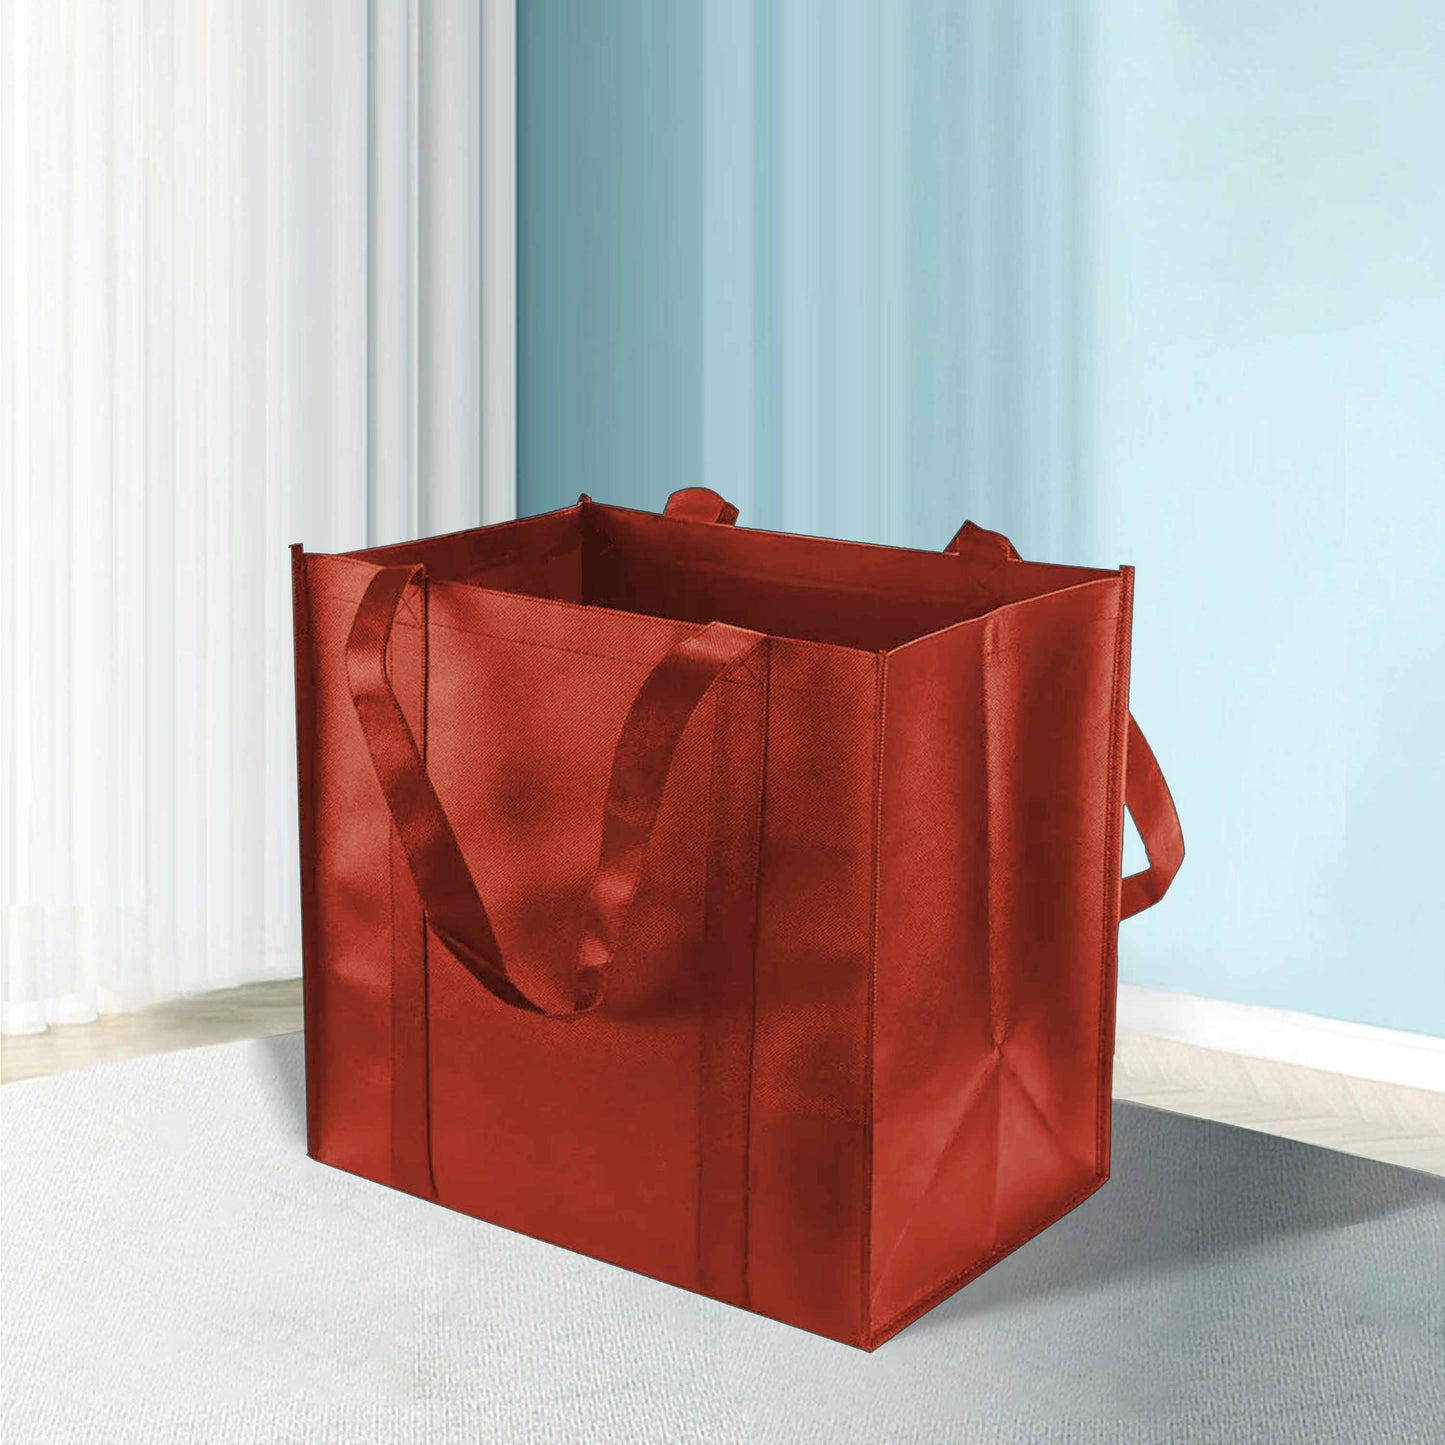 Reusable Non-Woven Shopping Bag - 12"W x 8"D x 12"H